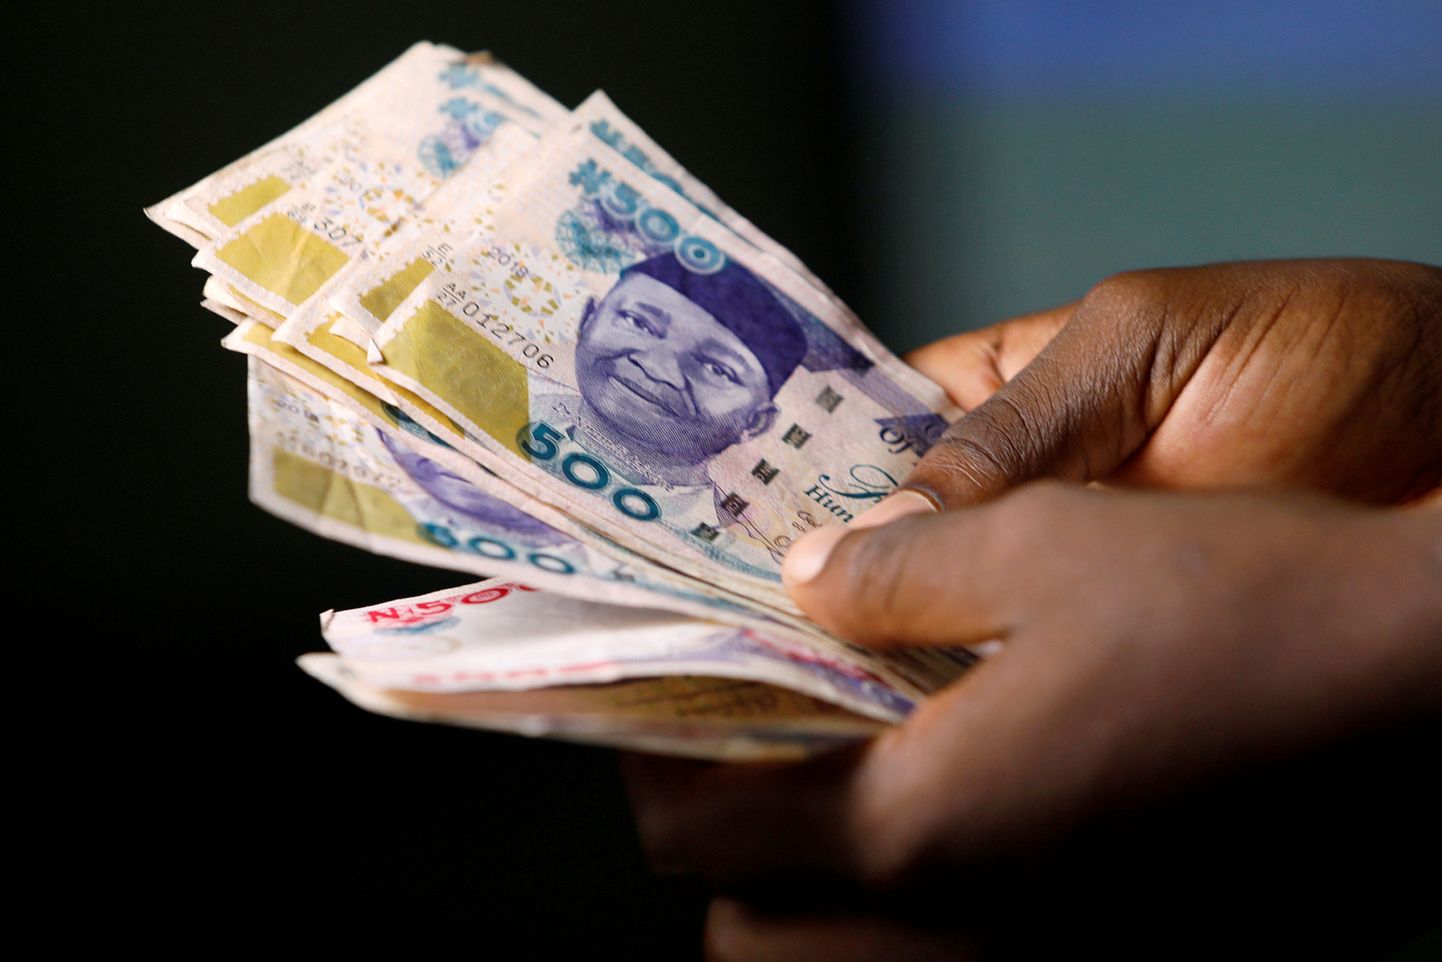 Nigeeria hakkab võitlema valuutat kokku ahnitsenud spekulantidega